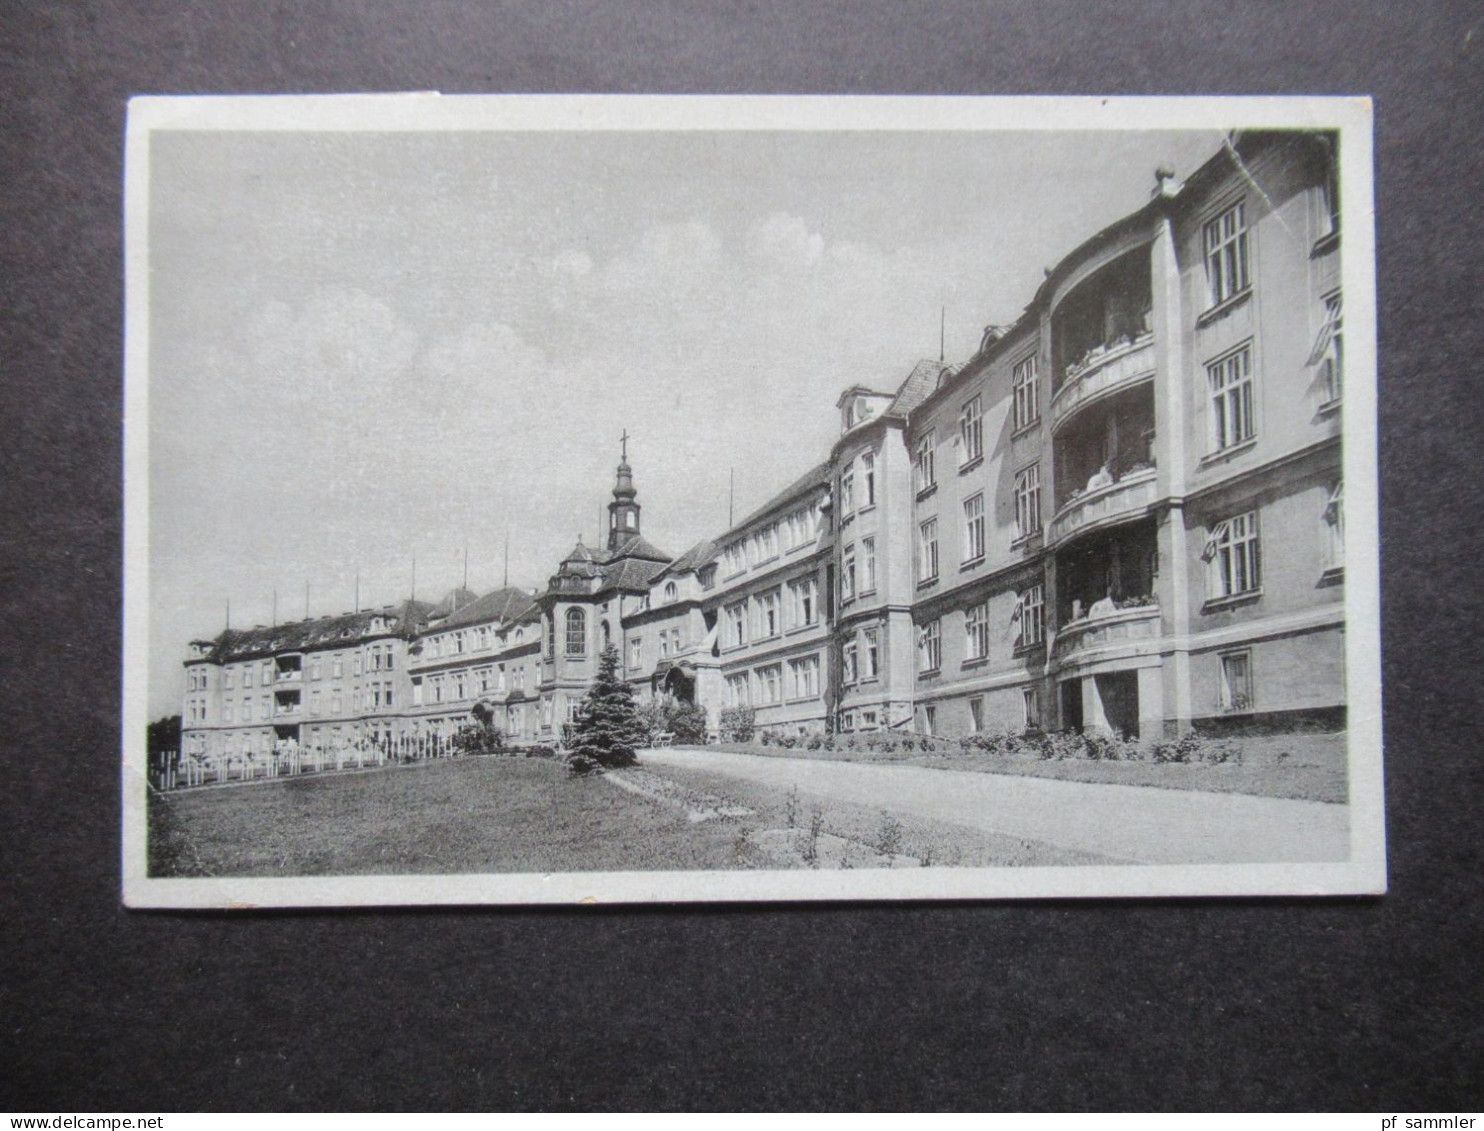 DR Böhmen Und Mähren 1942 Foto AK Sanatorium Na Plesi Mit Hitler Marke Eckrand Und Rahmenstempel - Covers & Documents